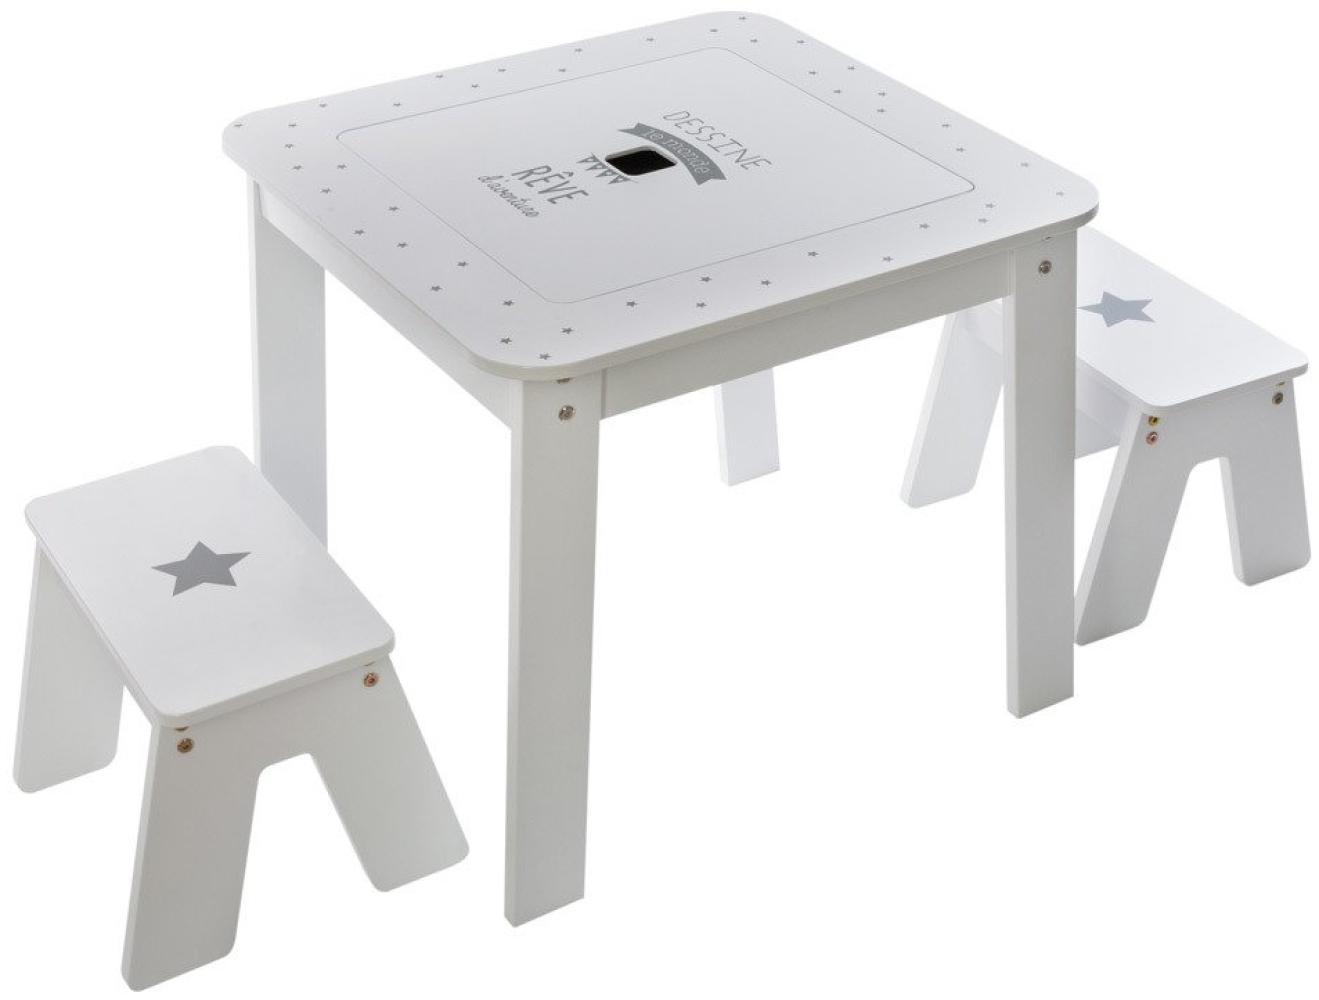 Atmosphera Beistelltisch mit Aufbewahrung, Tischplatte + 2 Hocker für Kinderzimmer, weiß/grau Bild 1